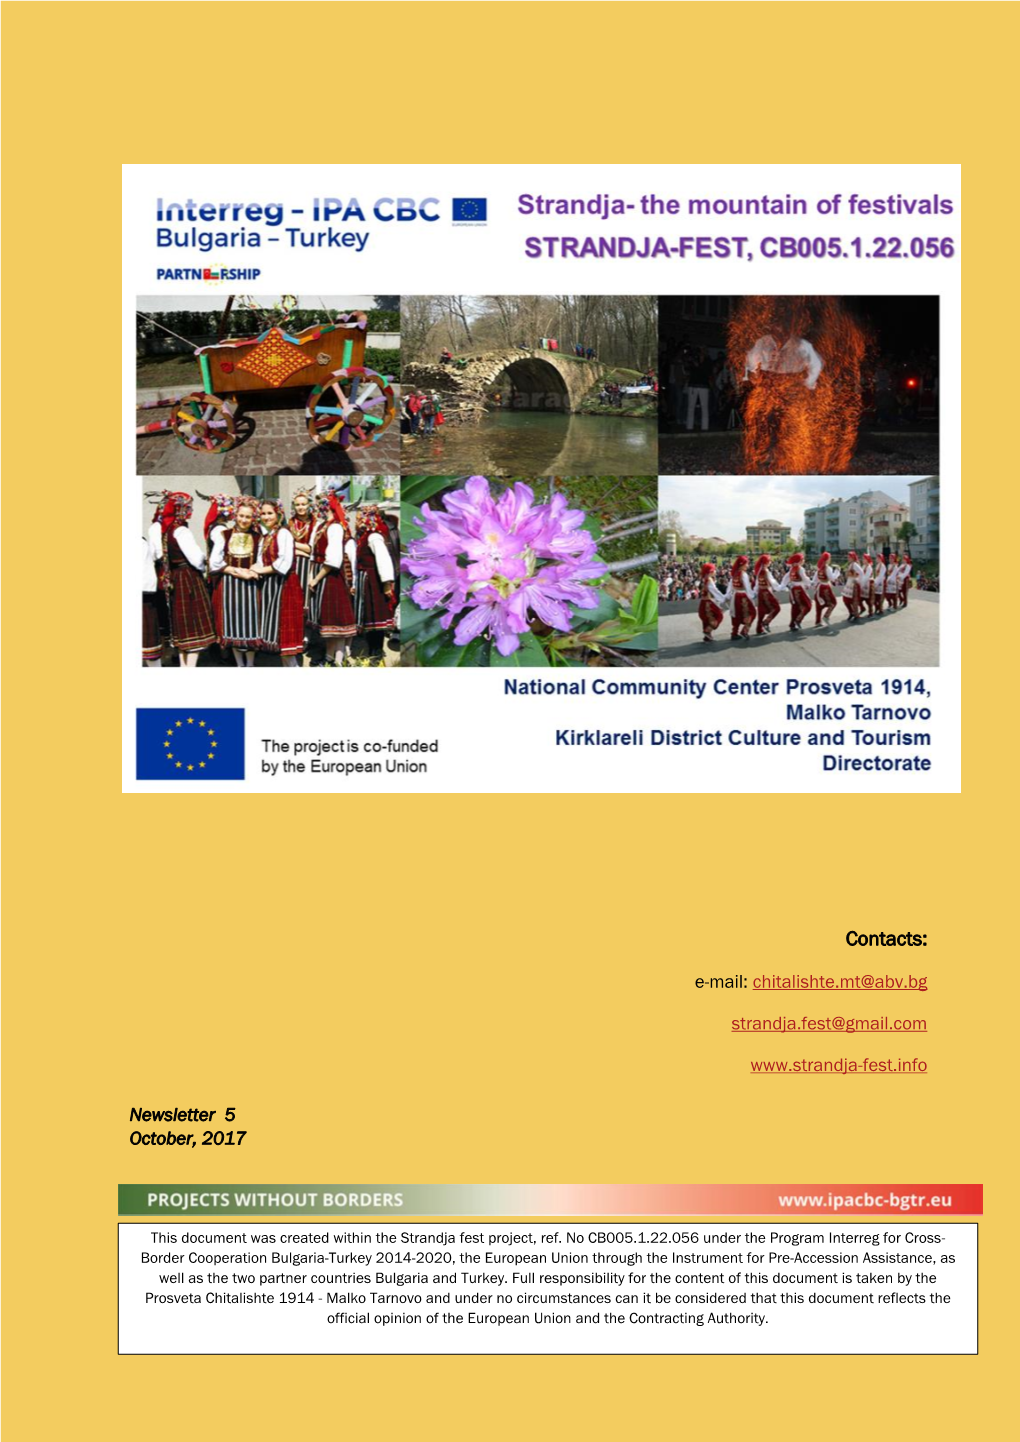 Strandja -The Mountain of Festivals (STRANDJA-FEST) CB005.1.22.056